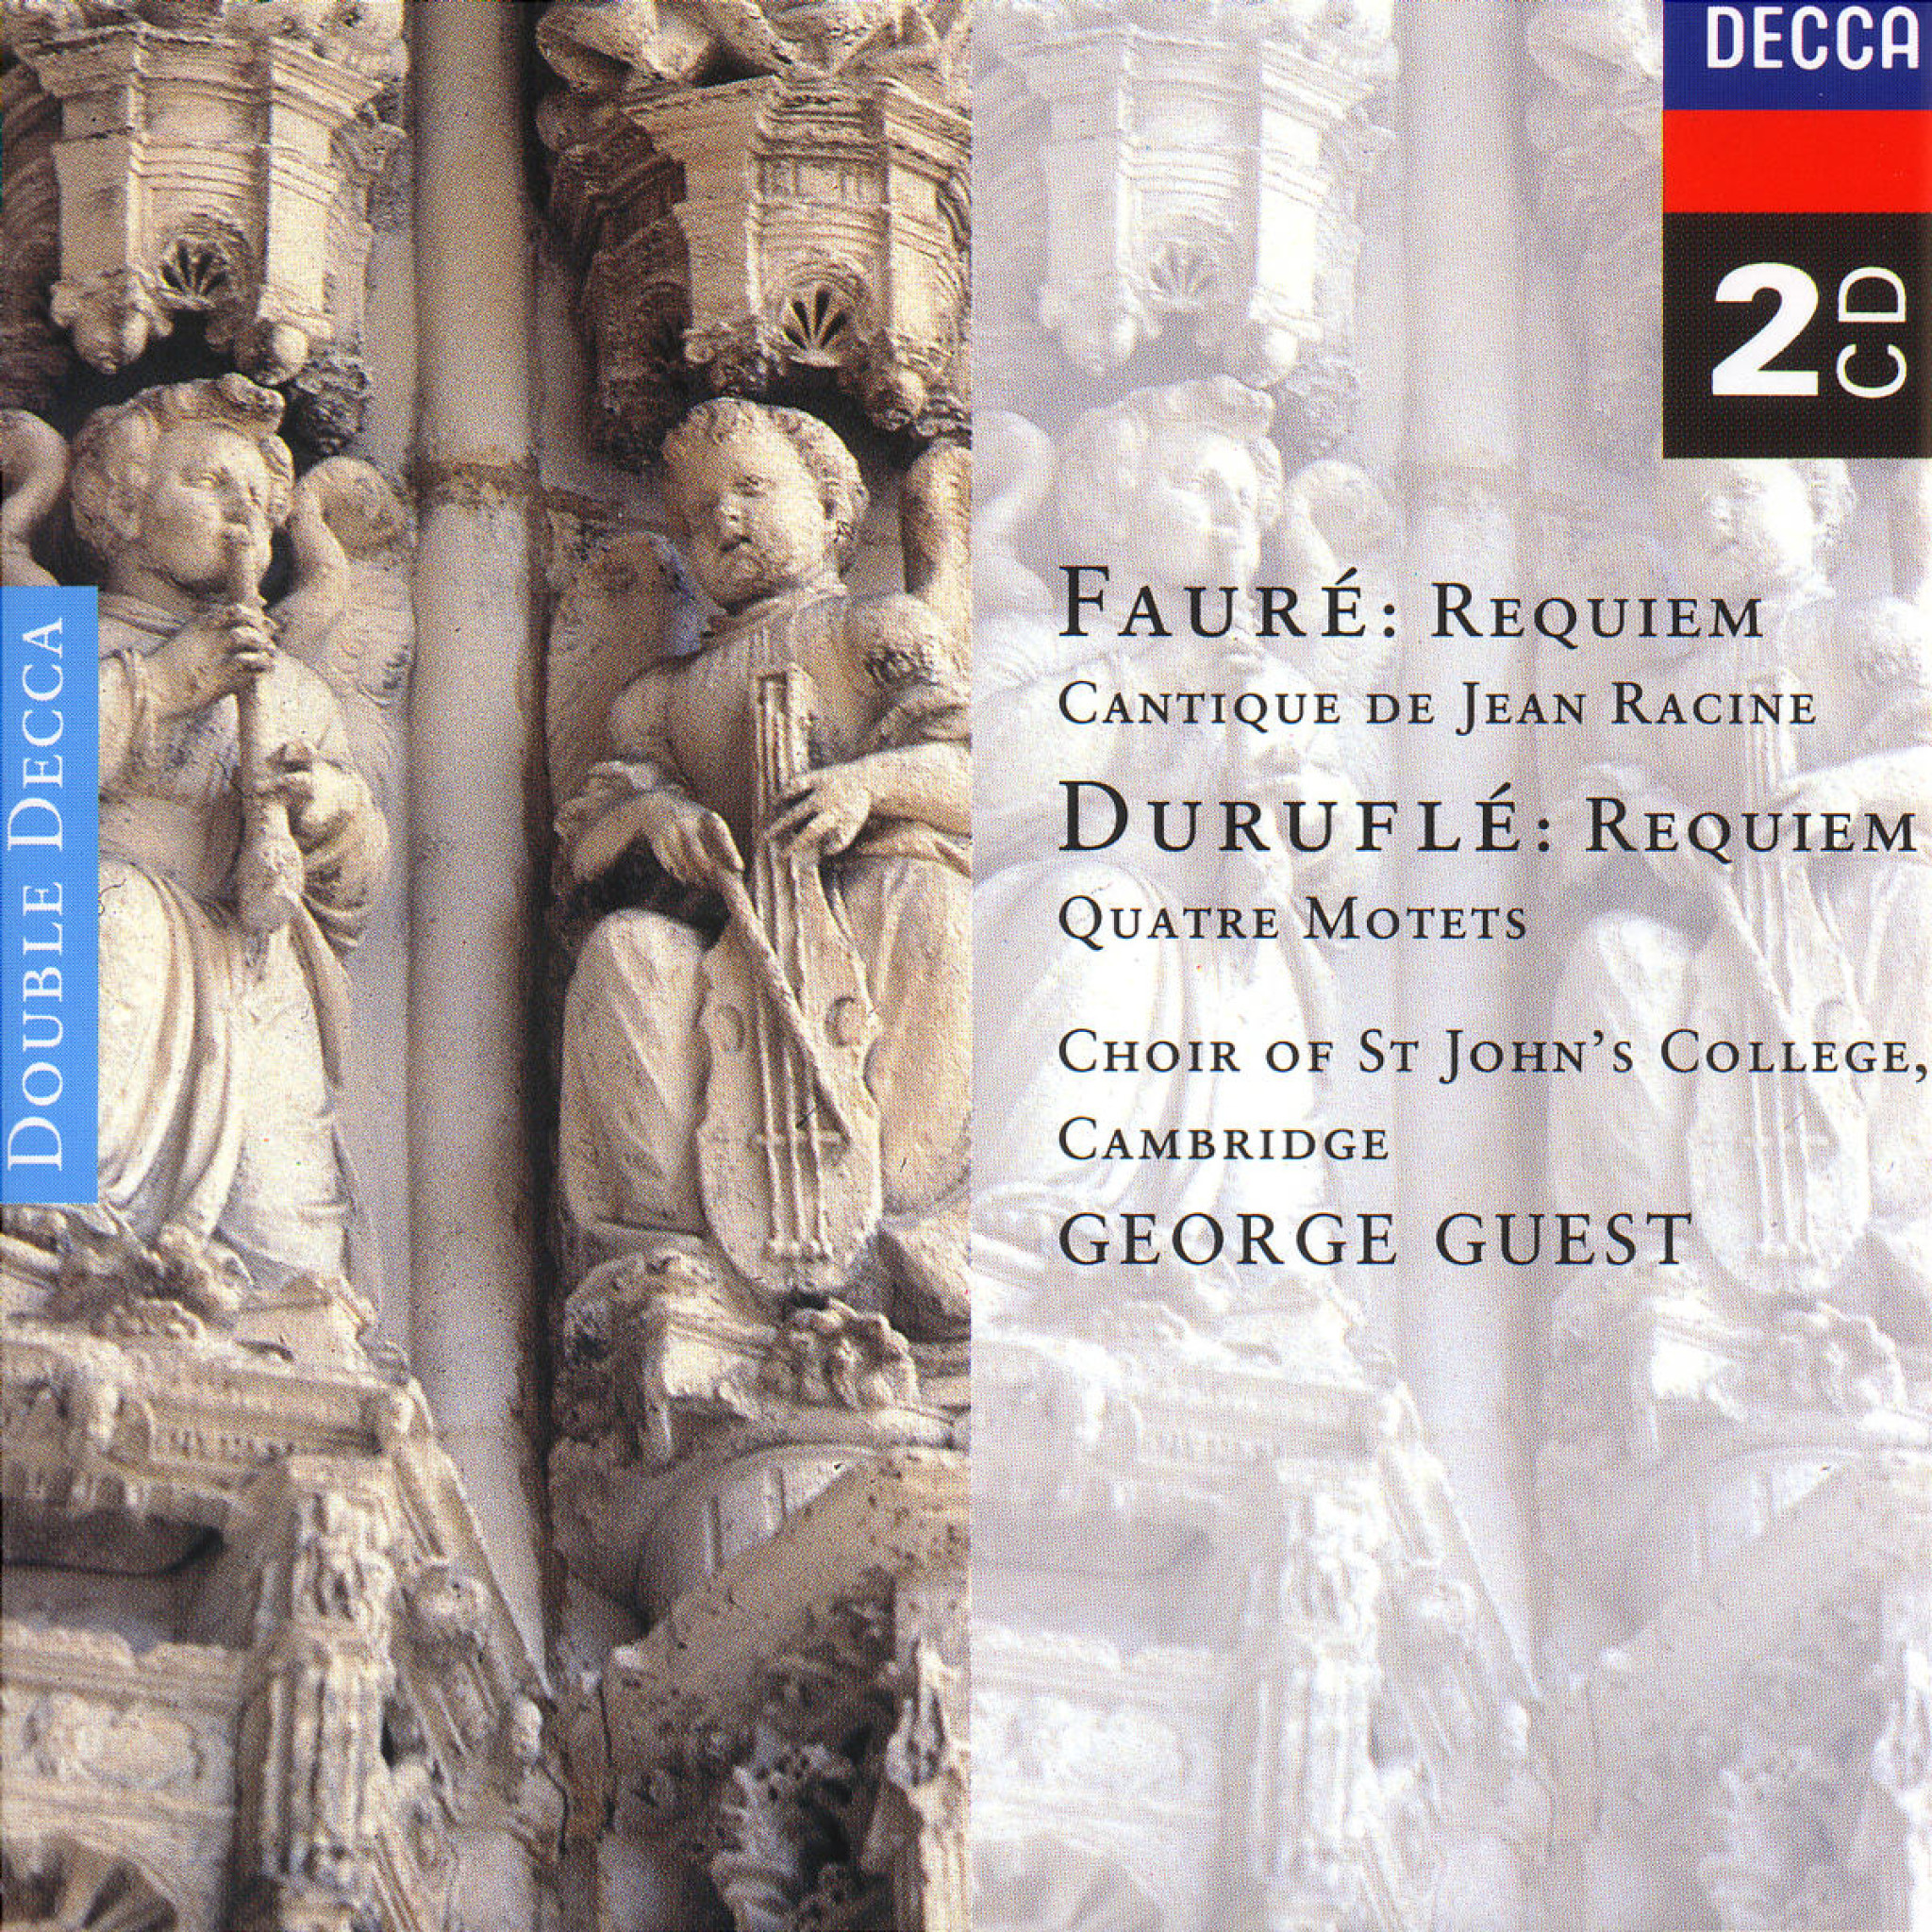 FAURÉ, DURUFLÉ Requiem /Choir of St John’s College